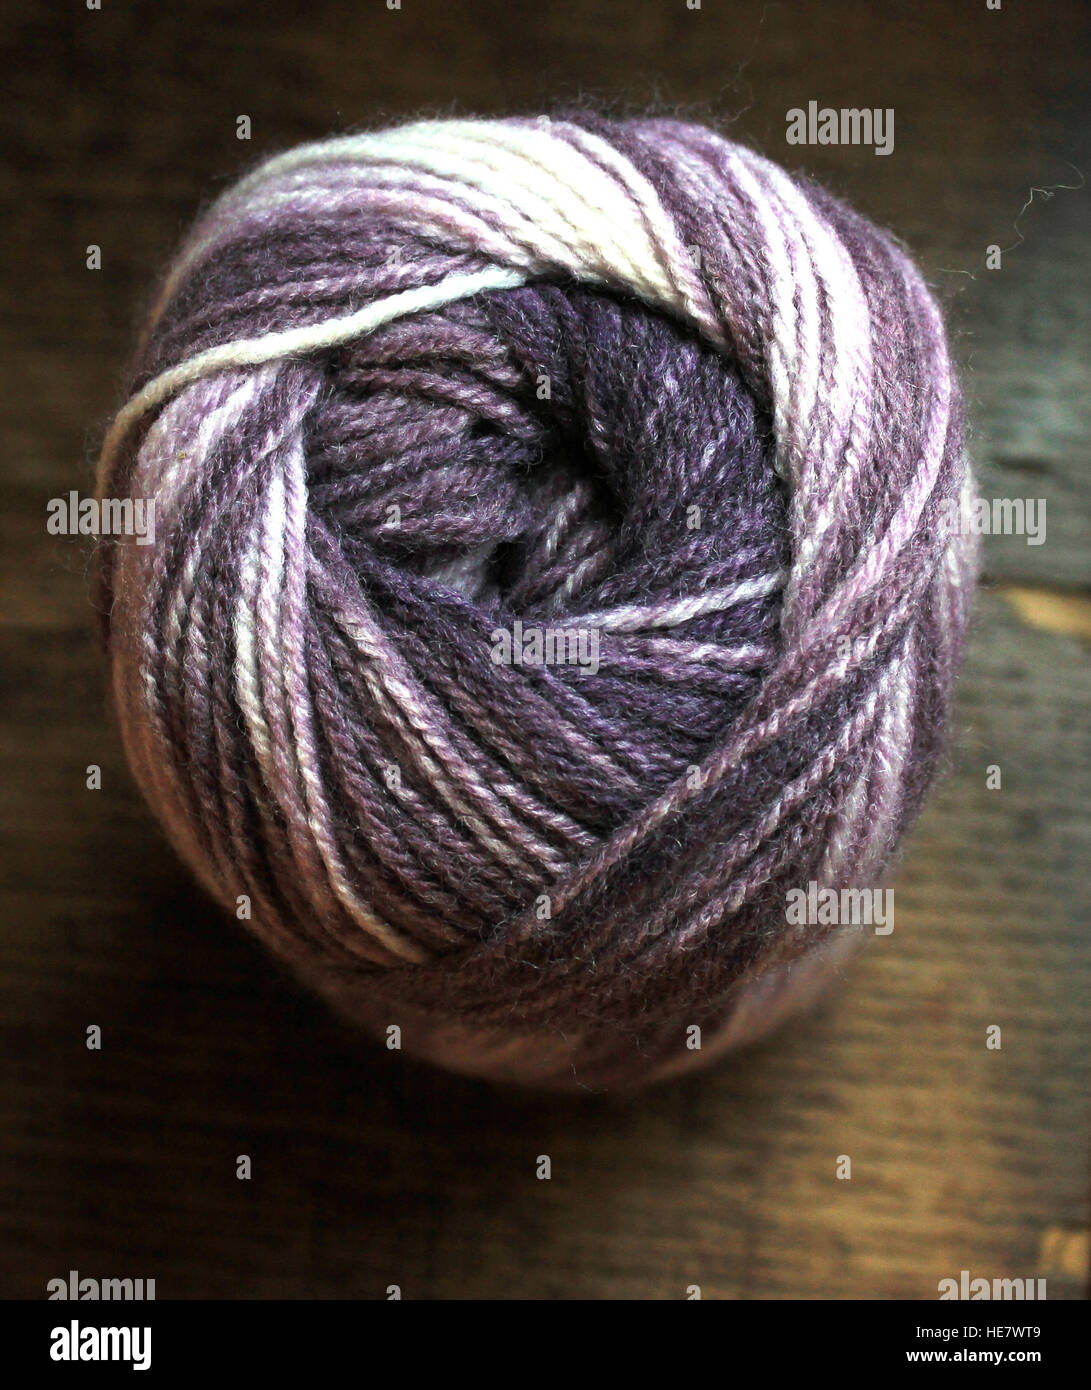 Une boule de fil à tricoter à la main dans les tons de pourpre et lilas illustrée de la fin bon thread définition. Banque D'Images